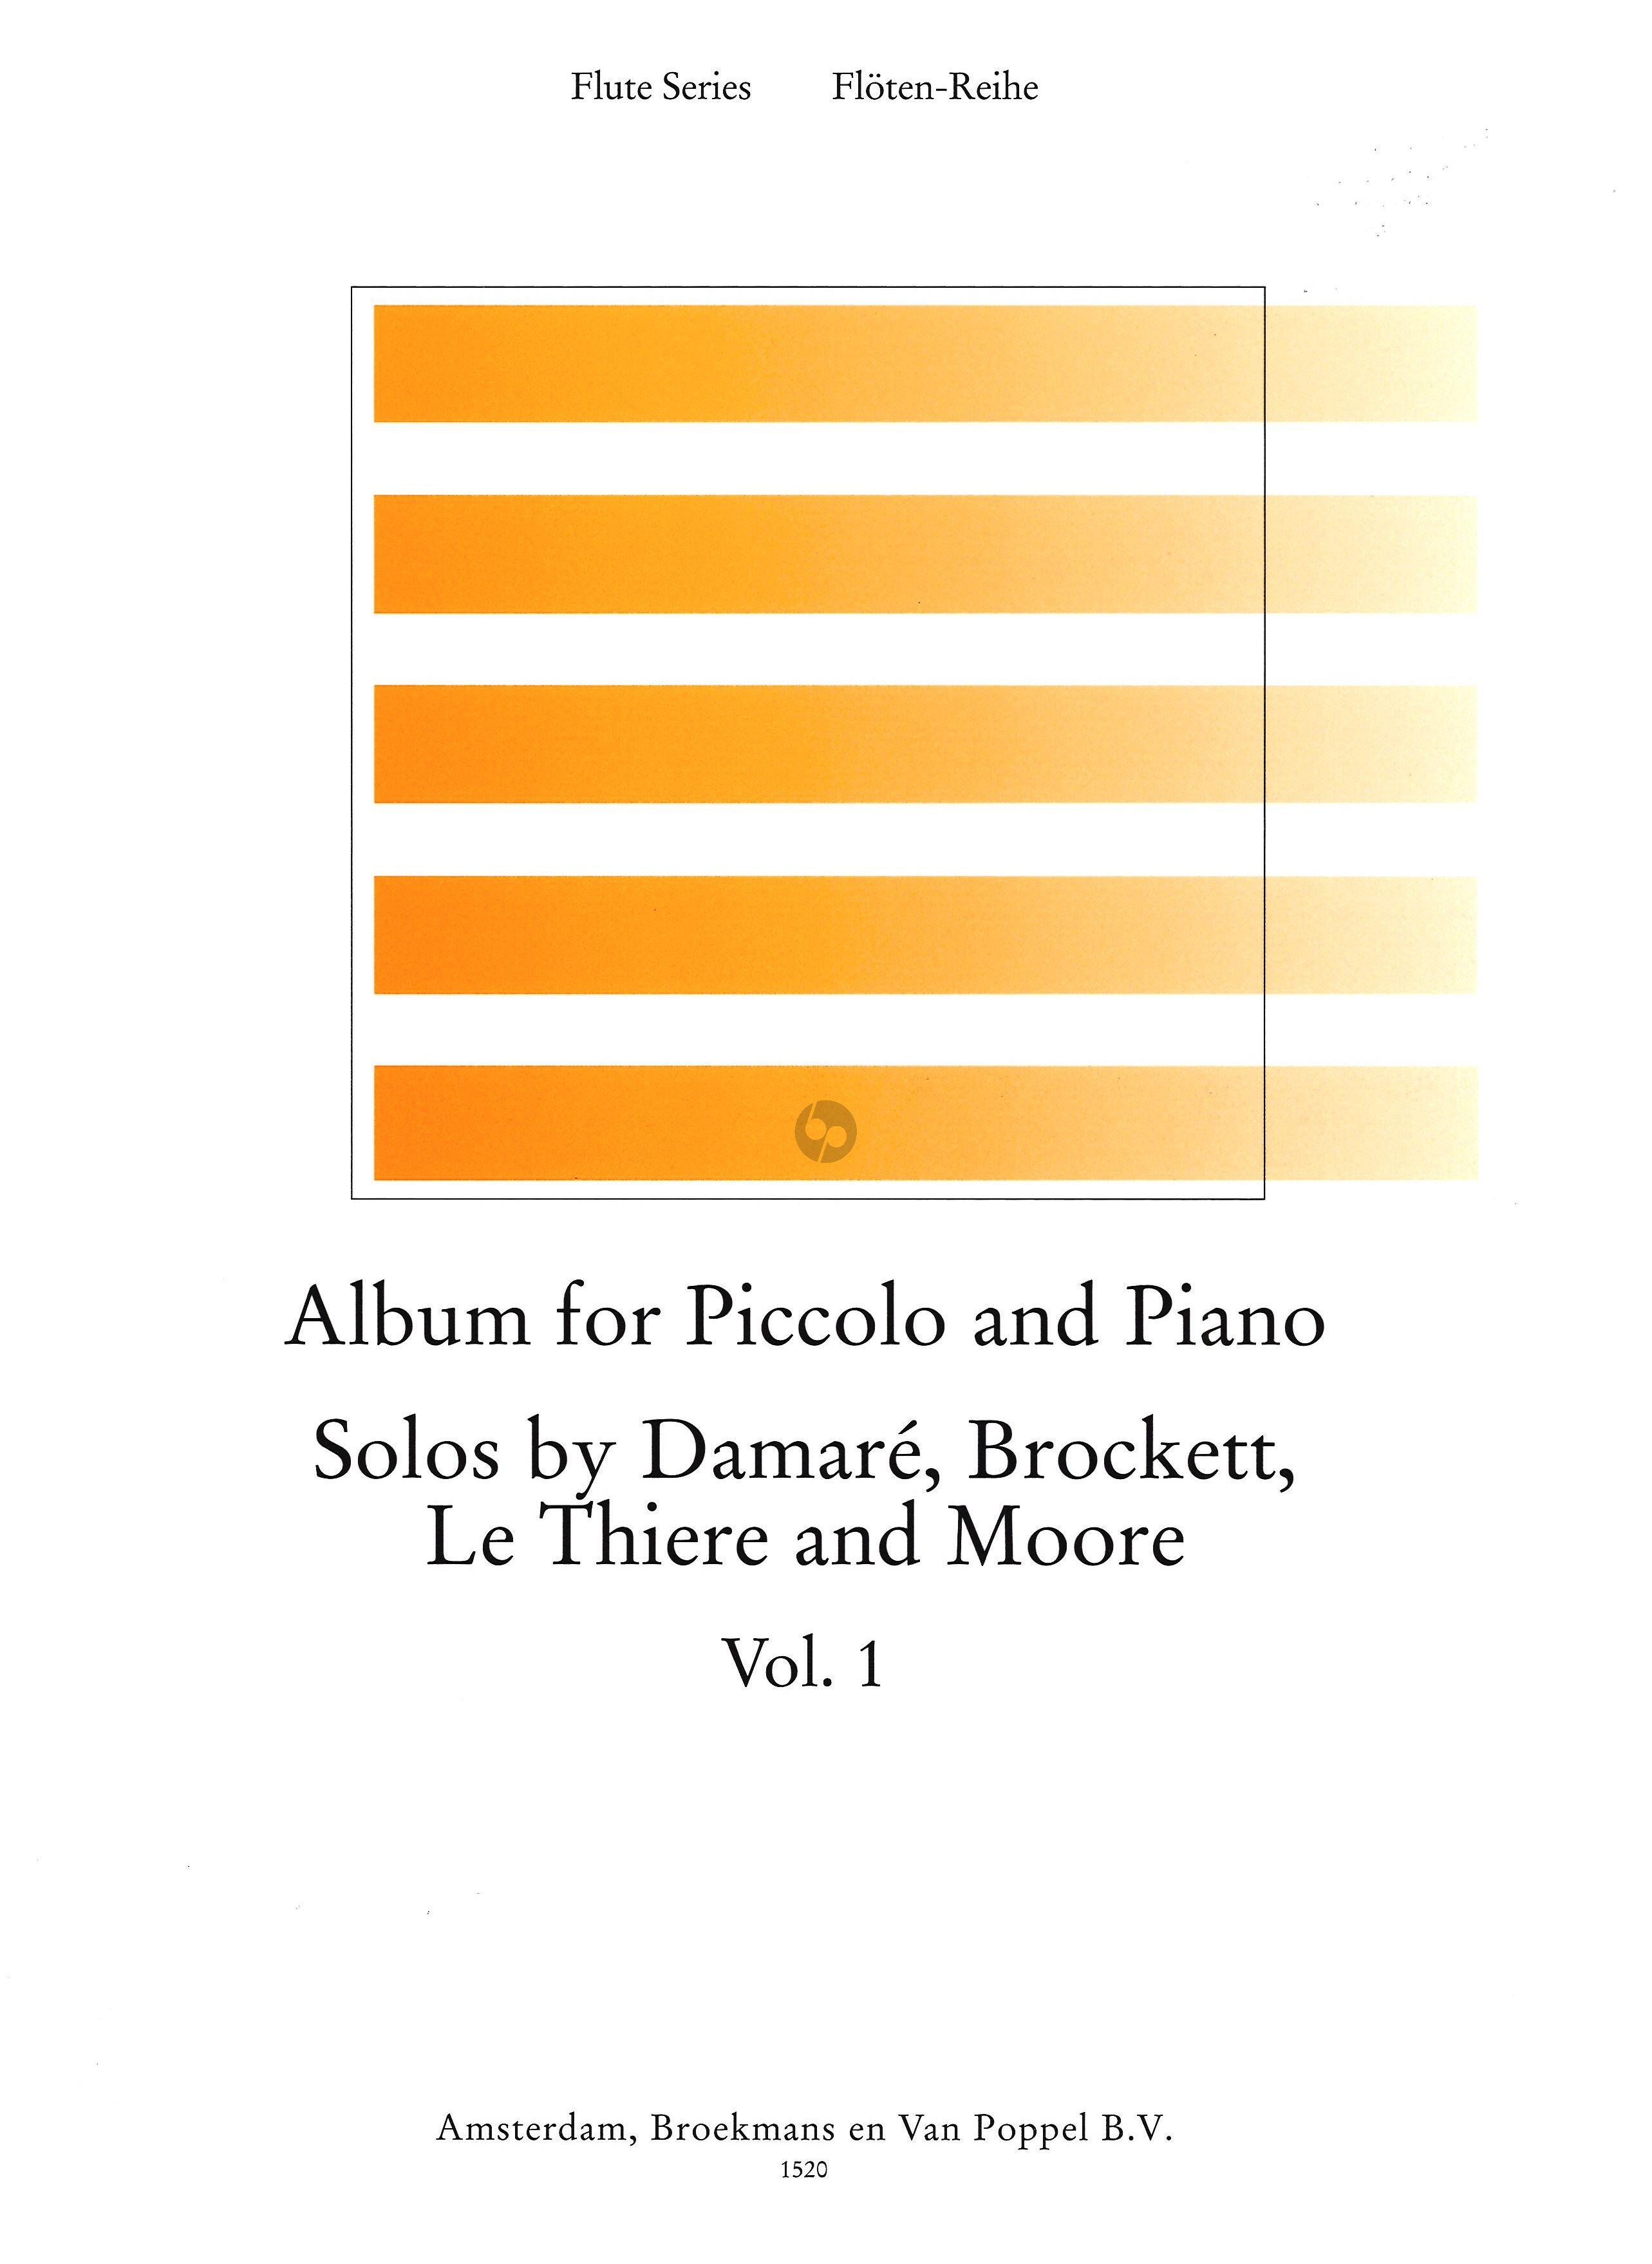 Album For Piccolo & Piano 1, Solos by Damare, Brockett, Le Thiere and Moore | Suono Flauti